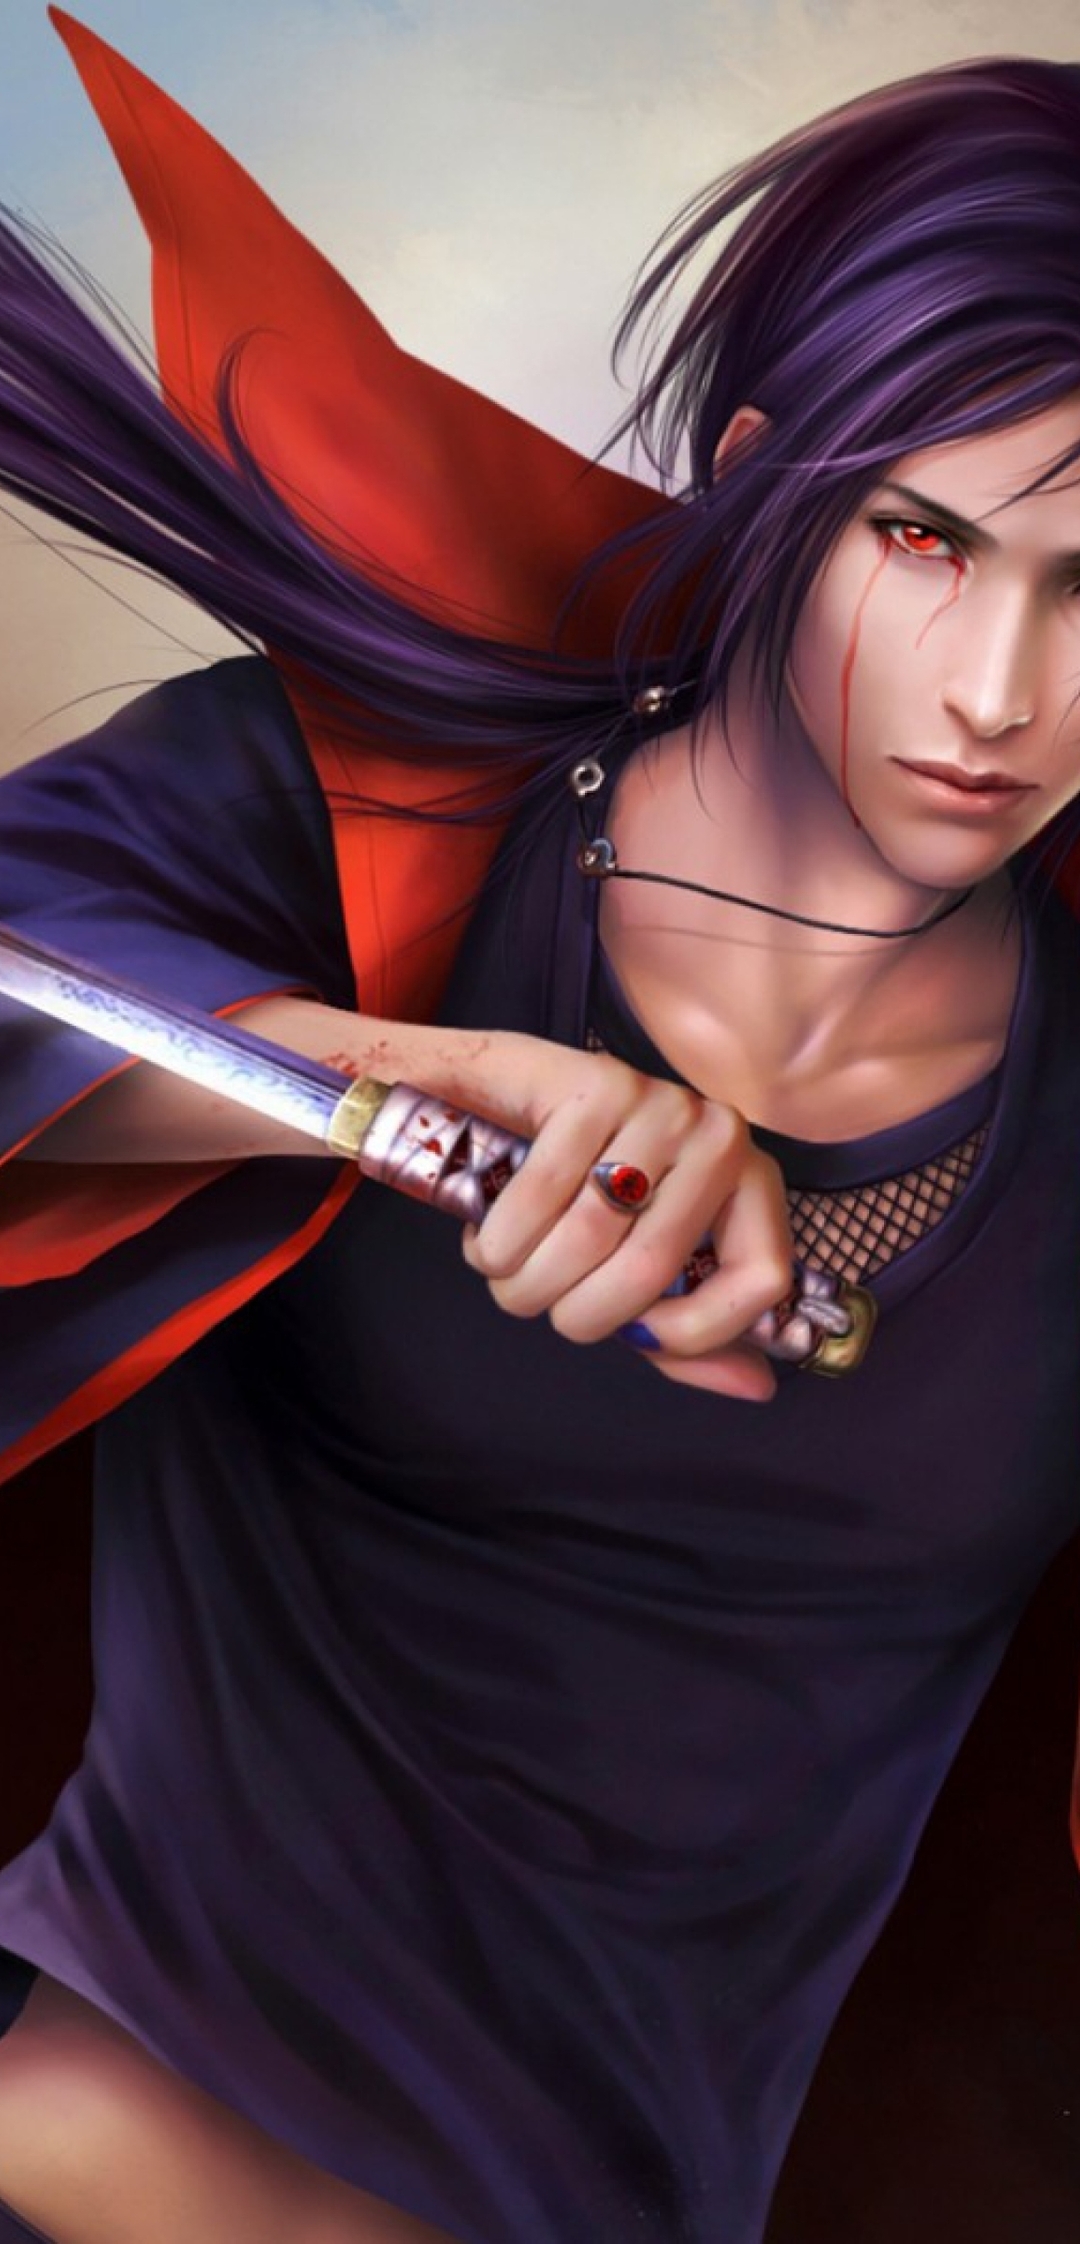 Картинка: Итачи Учиха, меч, оружие, взгляд, плащ, волосы, перья, аниме, Наруто, перс, кровь, шиноби